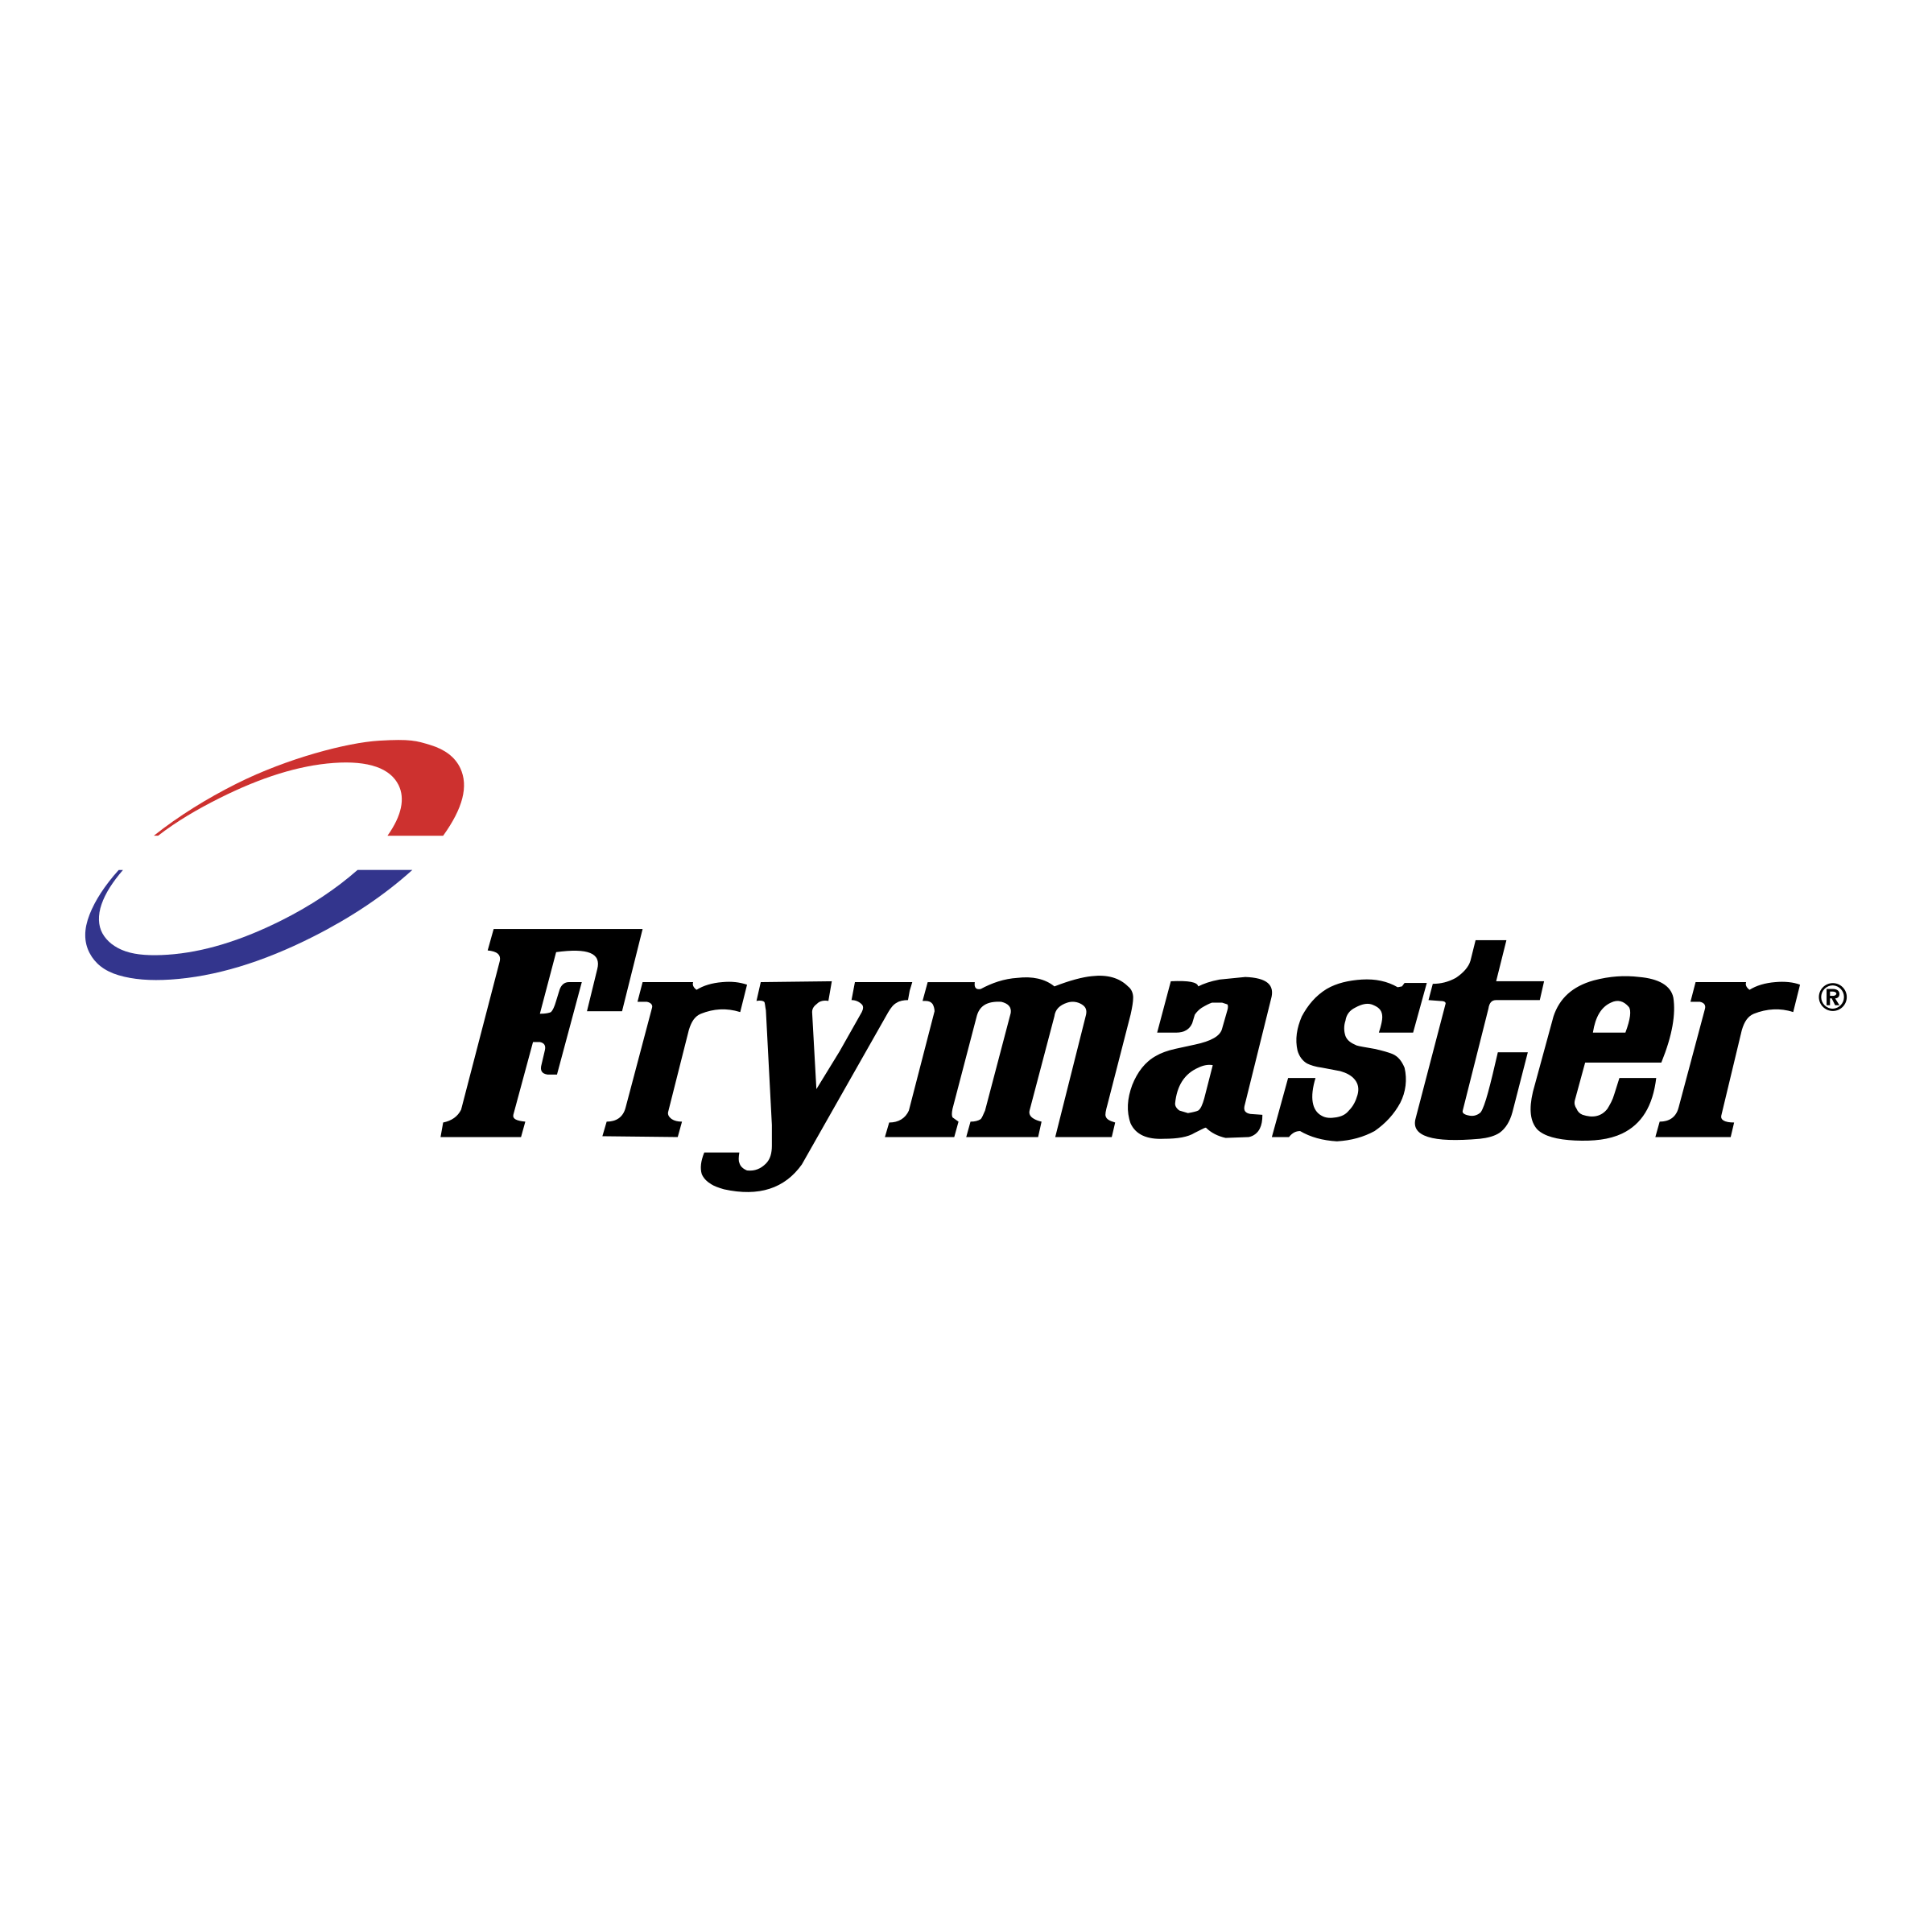 Frymaster Logo - Frymaster Logo PNG Transparent & SVG Vector - Freebie Supply